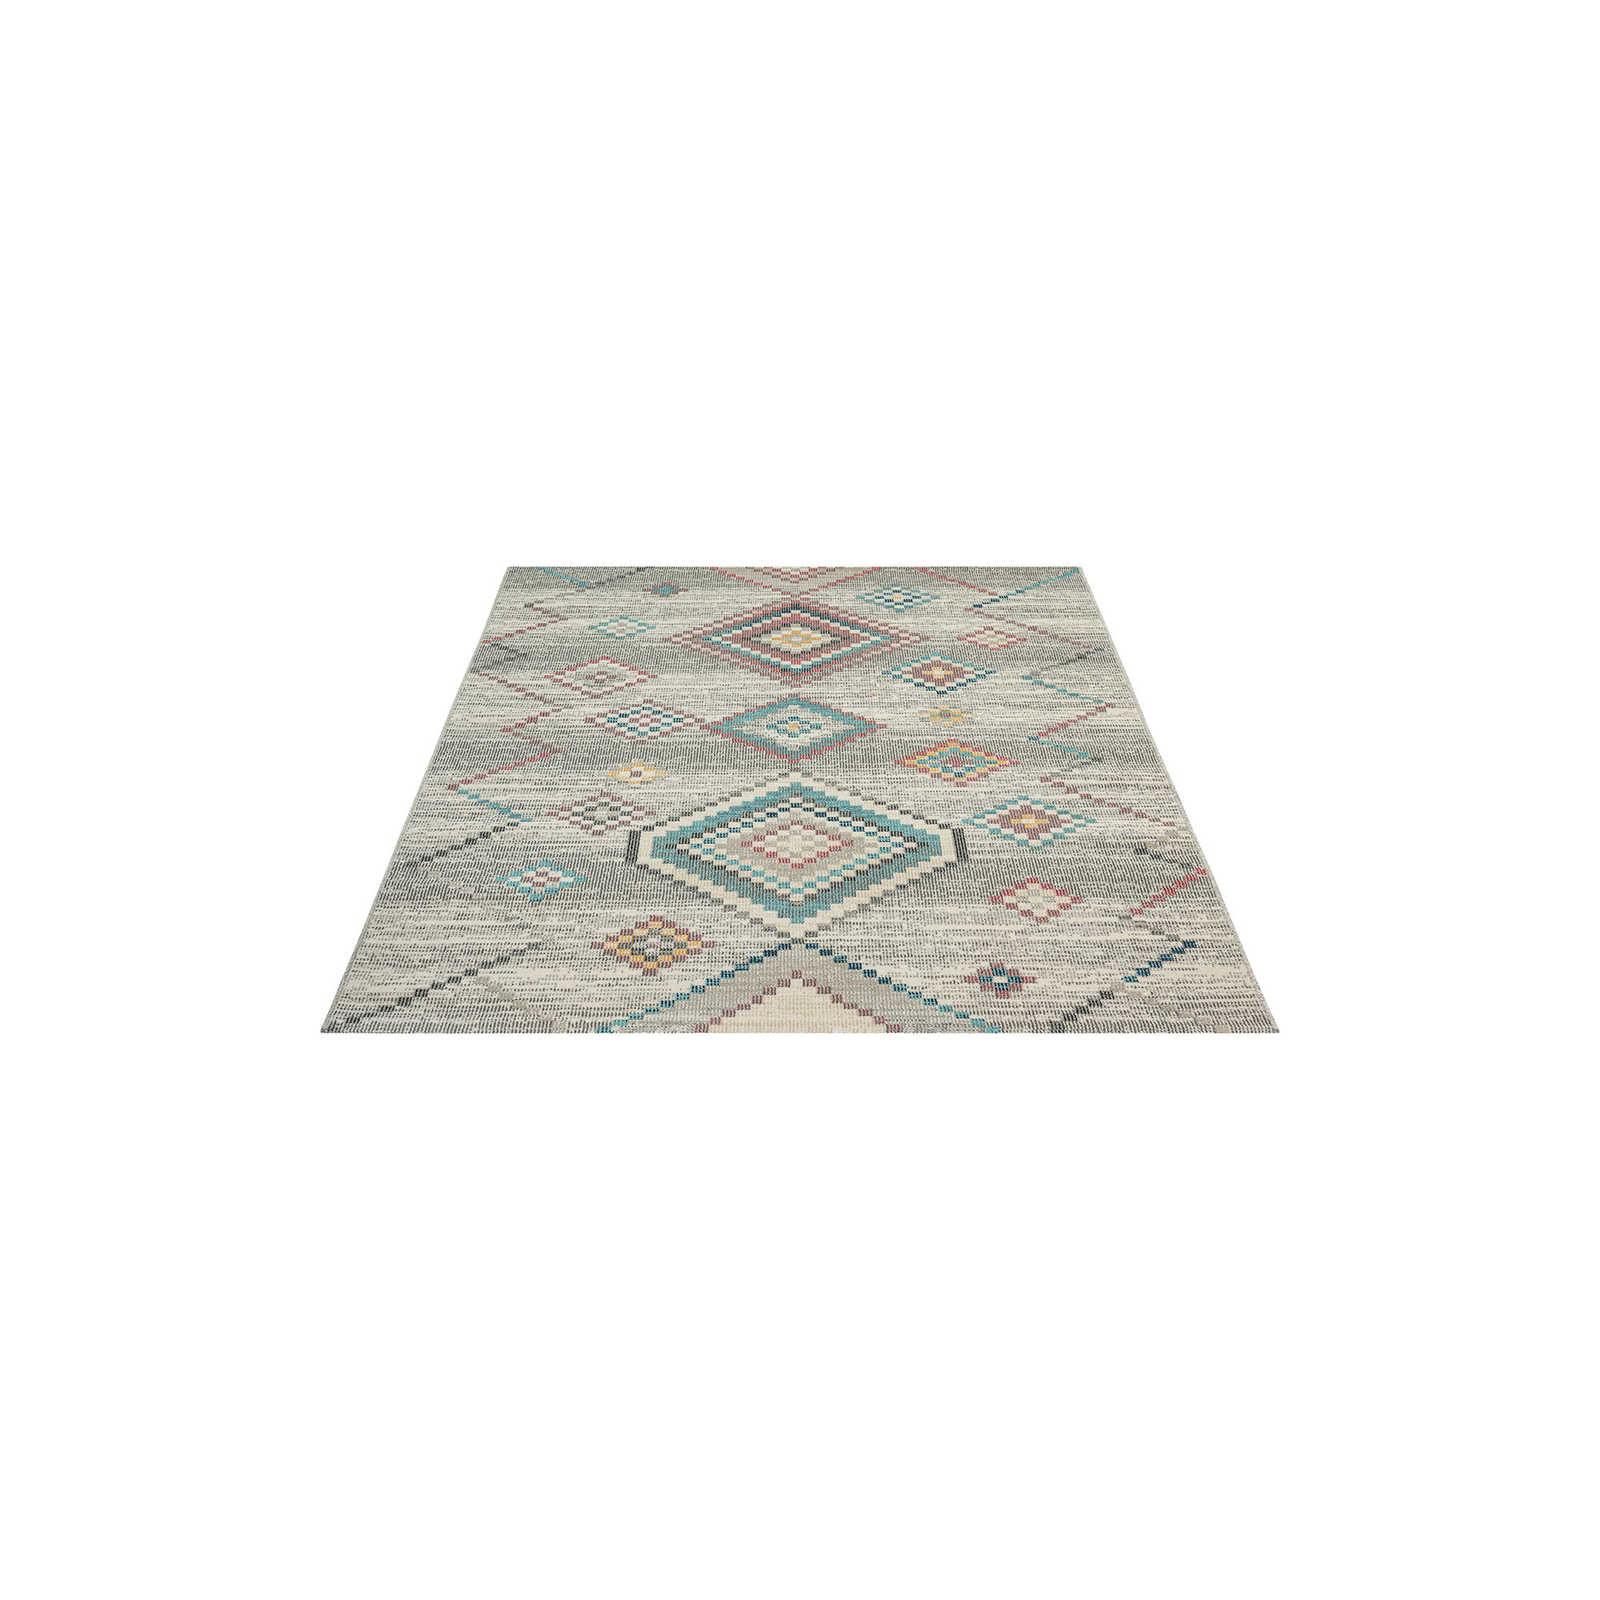 Cremefarbener Outdoor Teppich aus Flachgewebe – 200 x 140 cm
